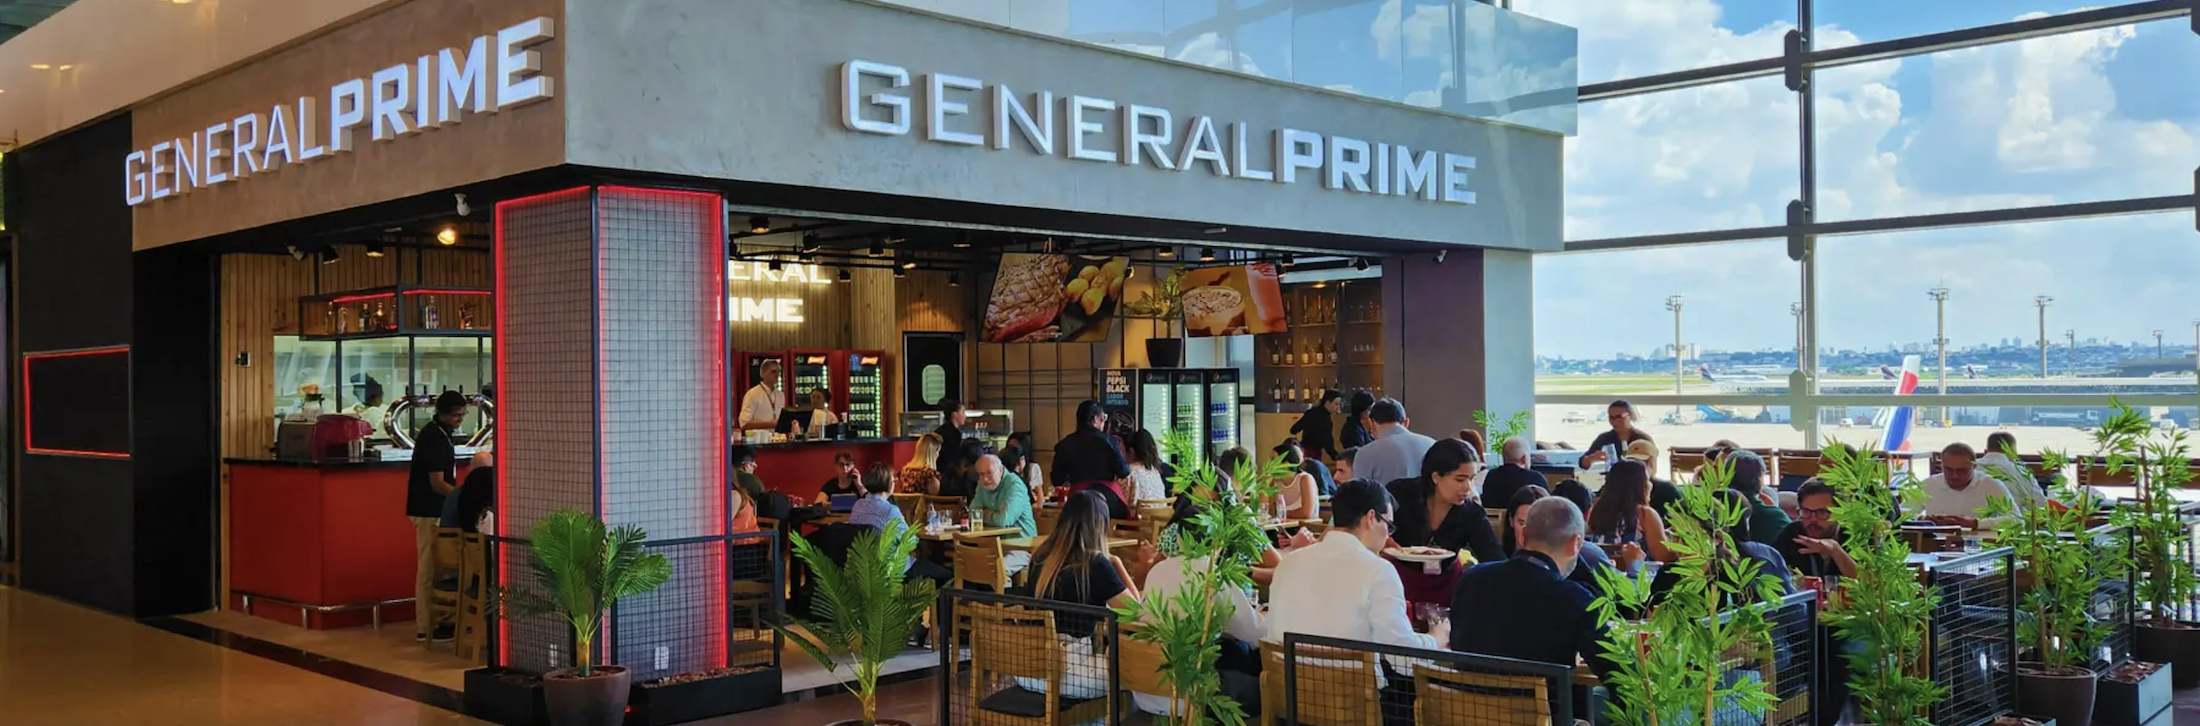 General Prime Steak & Burger - Aeroporto Internacional de Guarulhos